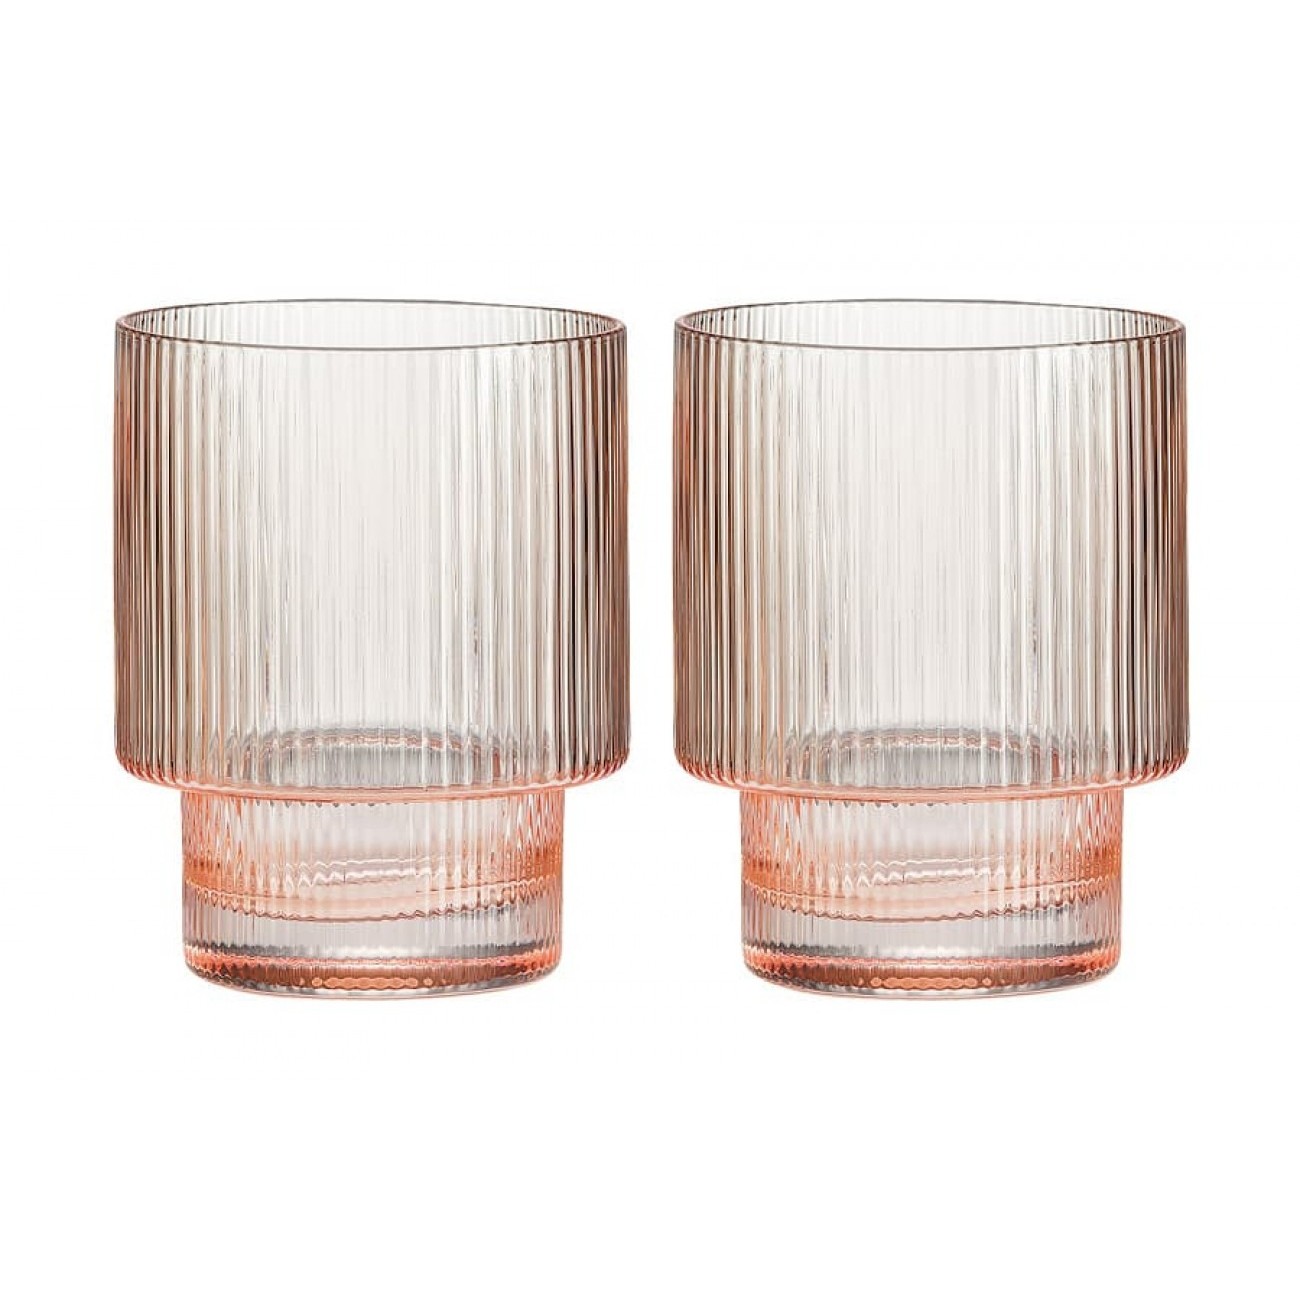 Набор стаканов Pozzi Milano 1876 Modern classic для воды розовый 0.32 л 2 предмета набор стаканов maxwell